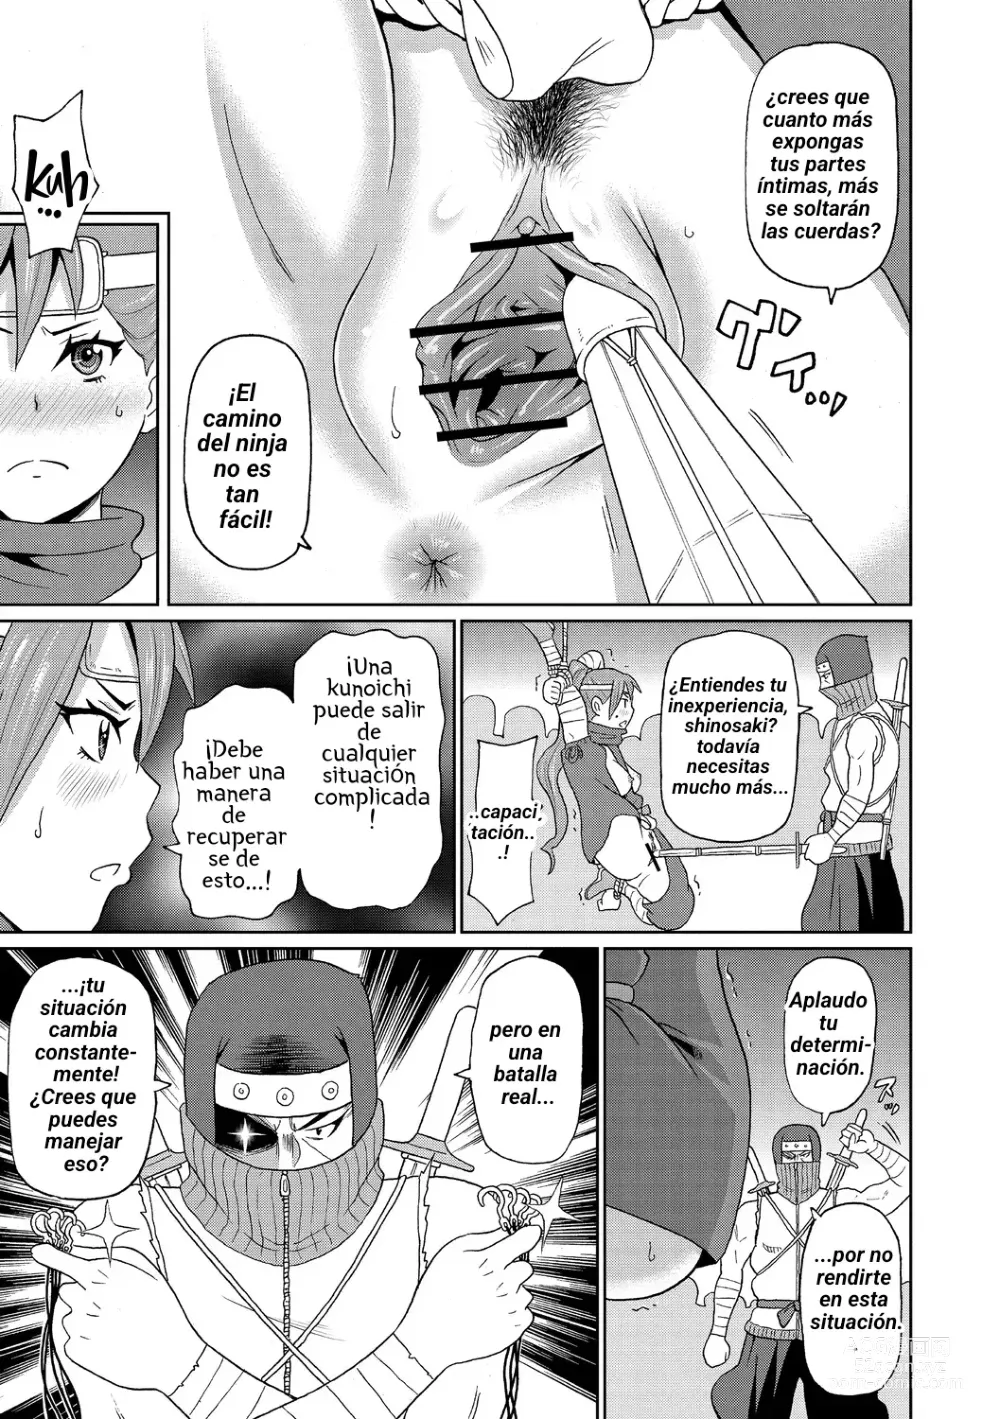 Page 7 of manga Shinmai Kunoichi Shinozaki-san.